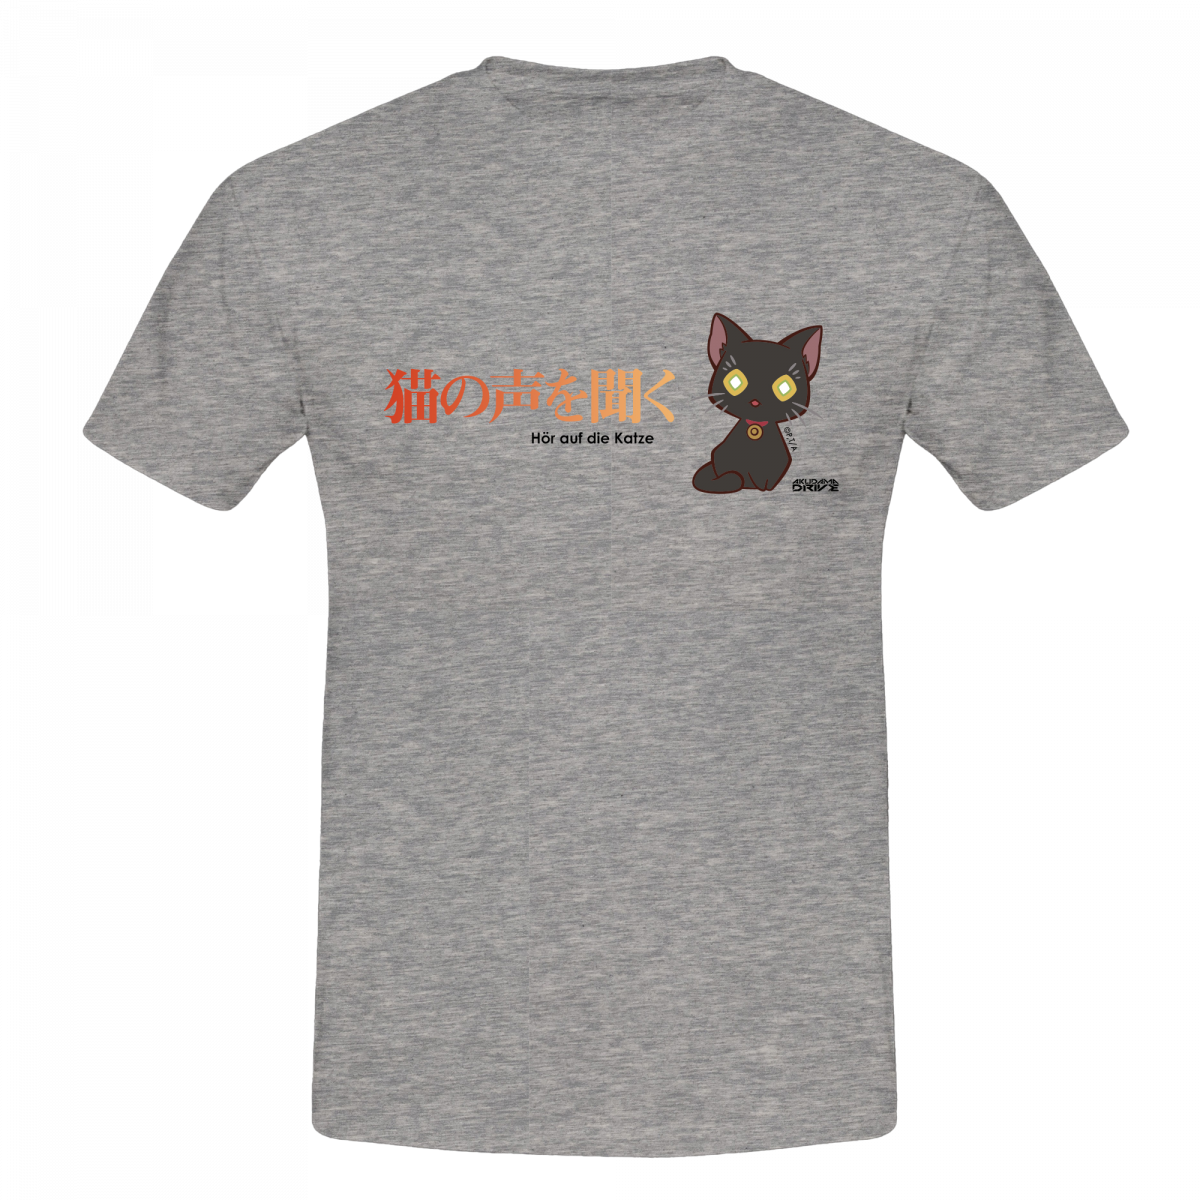 T-Shirt "Hör auf die Katze" - Akudama Drive